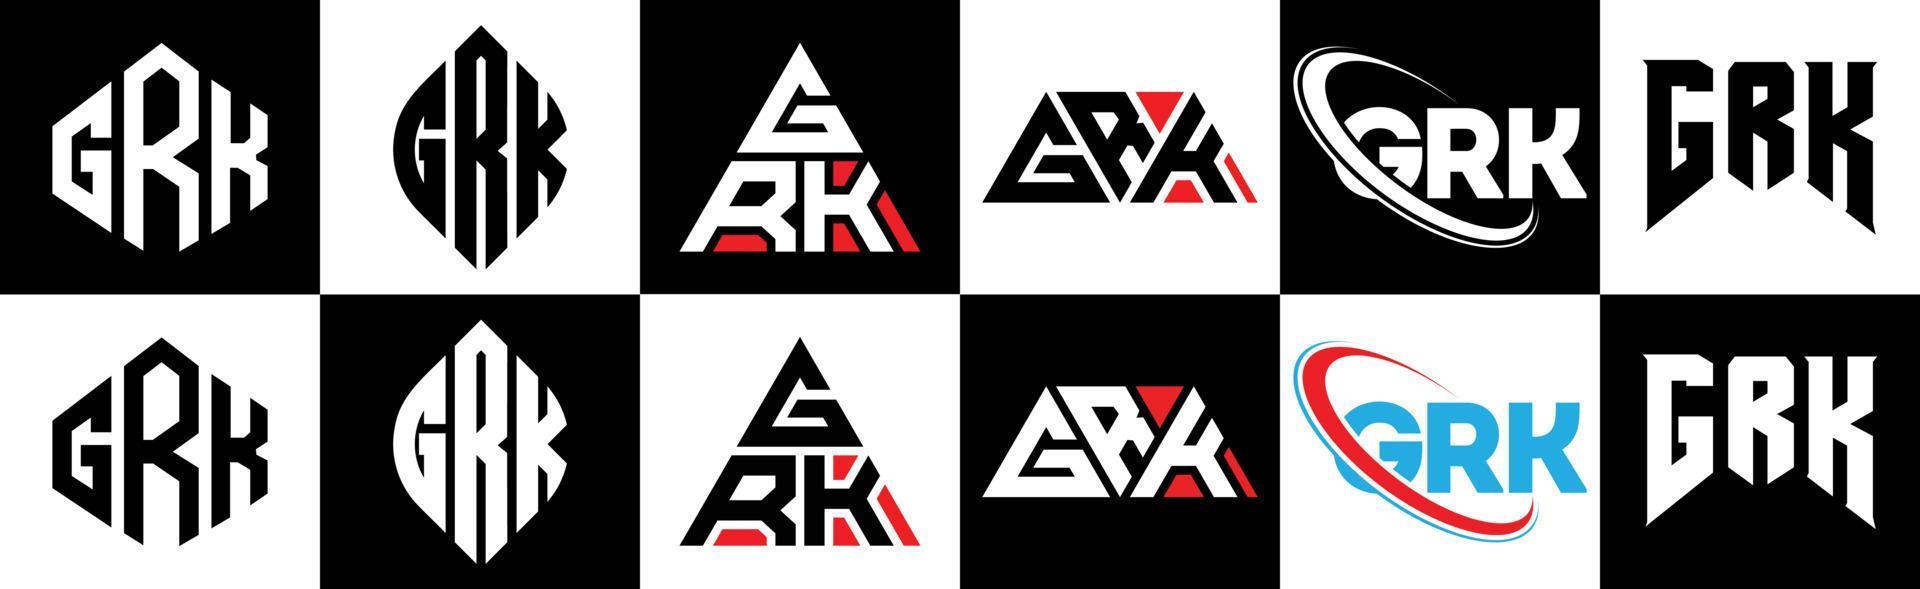 grk-Buchstaben-Logo-Design in sechs Stilen. grk polygon, kreis, dreieck, sechseck, flacher und einfacher stil mit schwarz-weißem buchstabenlogo in einer zeichenfläche. Grk minimalistisches und klassisches Logo vektor